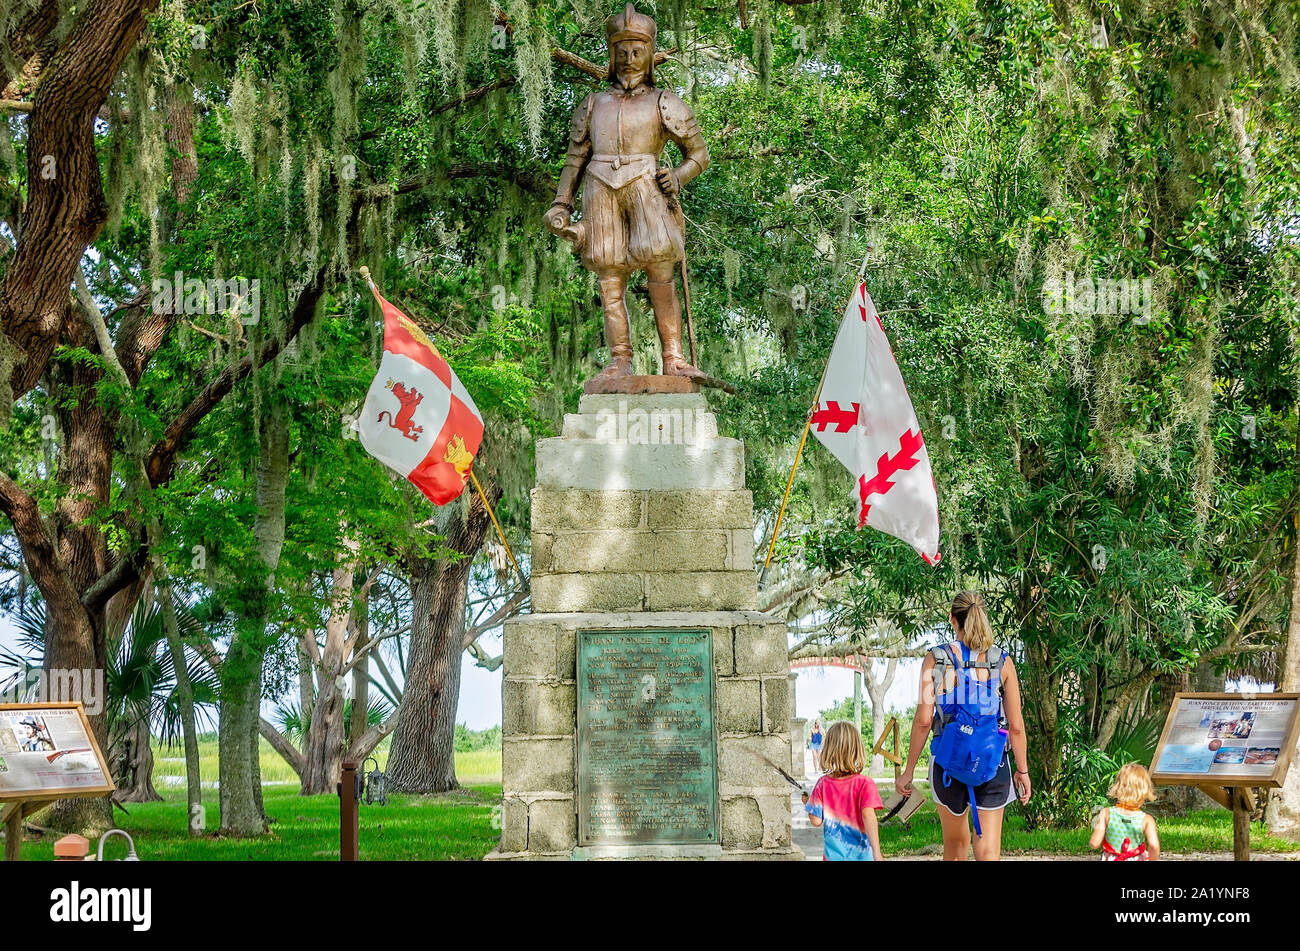 Una madre e i suoi figli a piedi passato una statua di Ponce de Leon a Ponce de Leon la fontana della giovinezza del Parco Archeologico di Sant'Agostino, Florida. Foto Stock